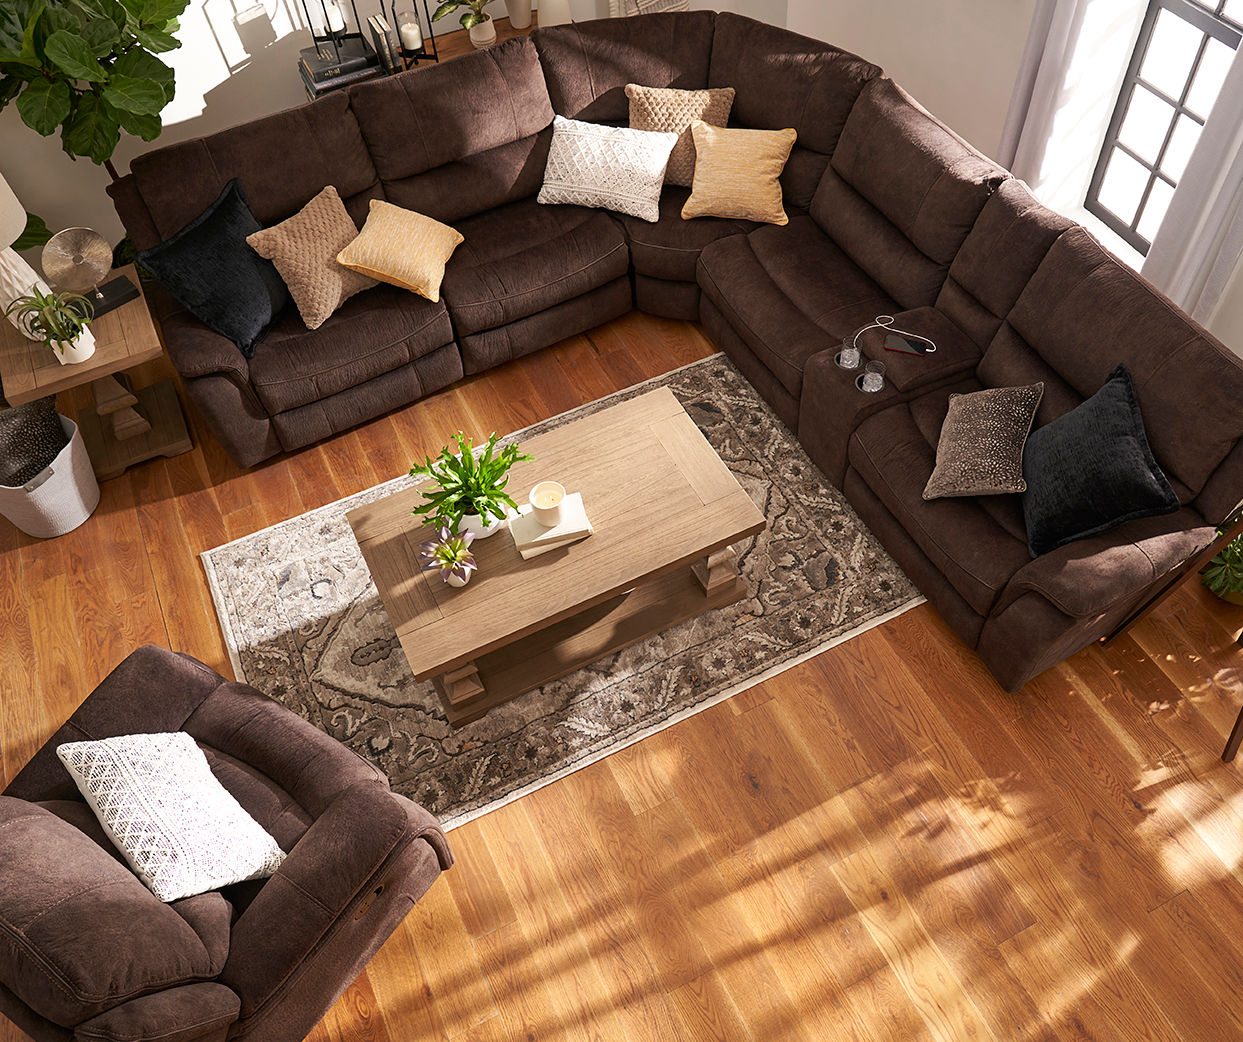 Broyhill Living Room Sets Baci Living Room